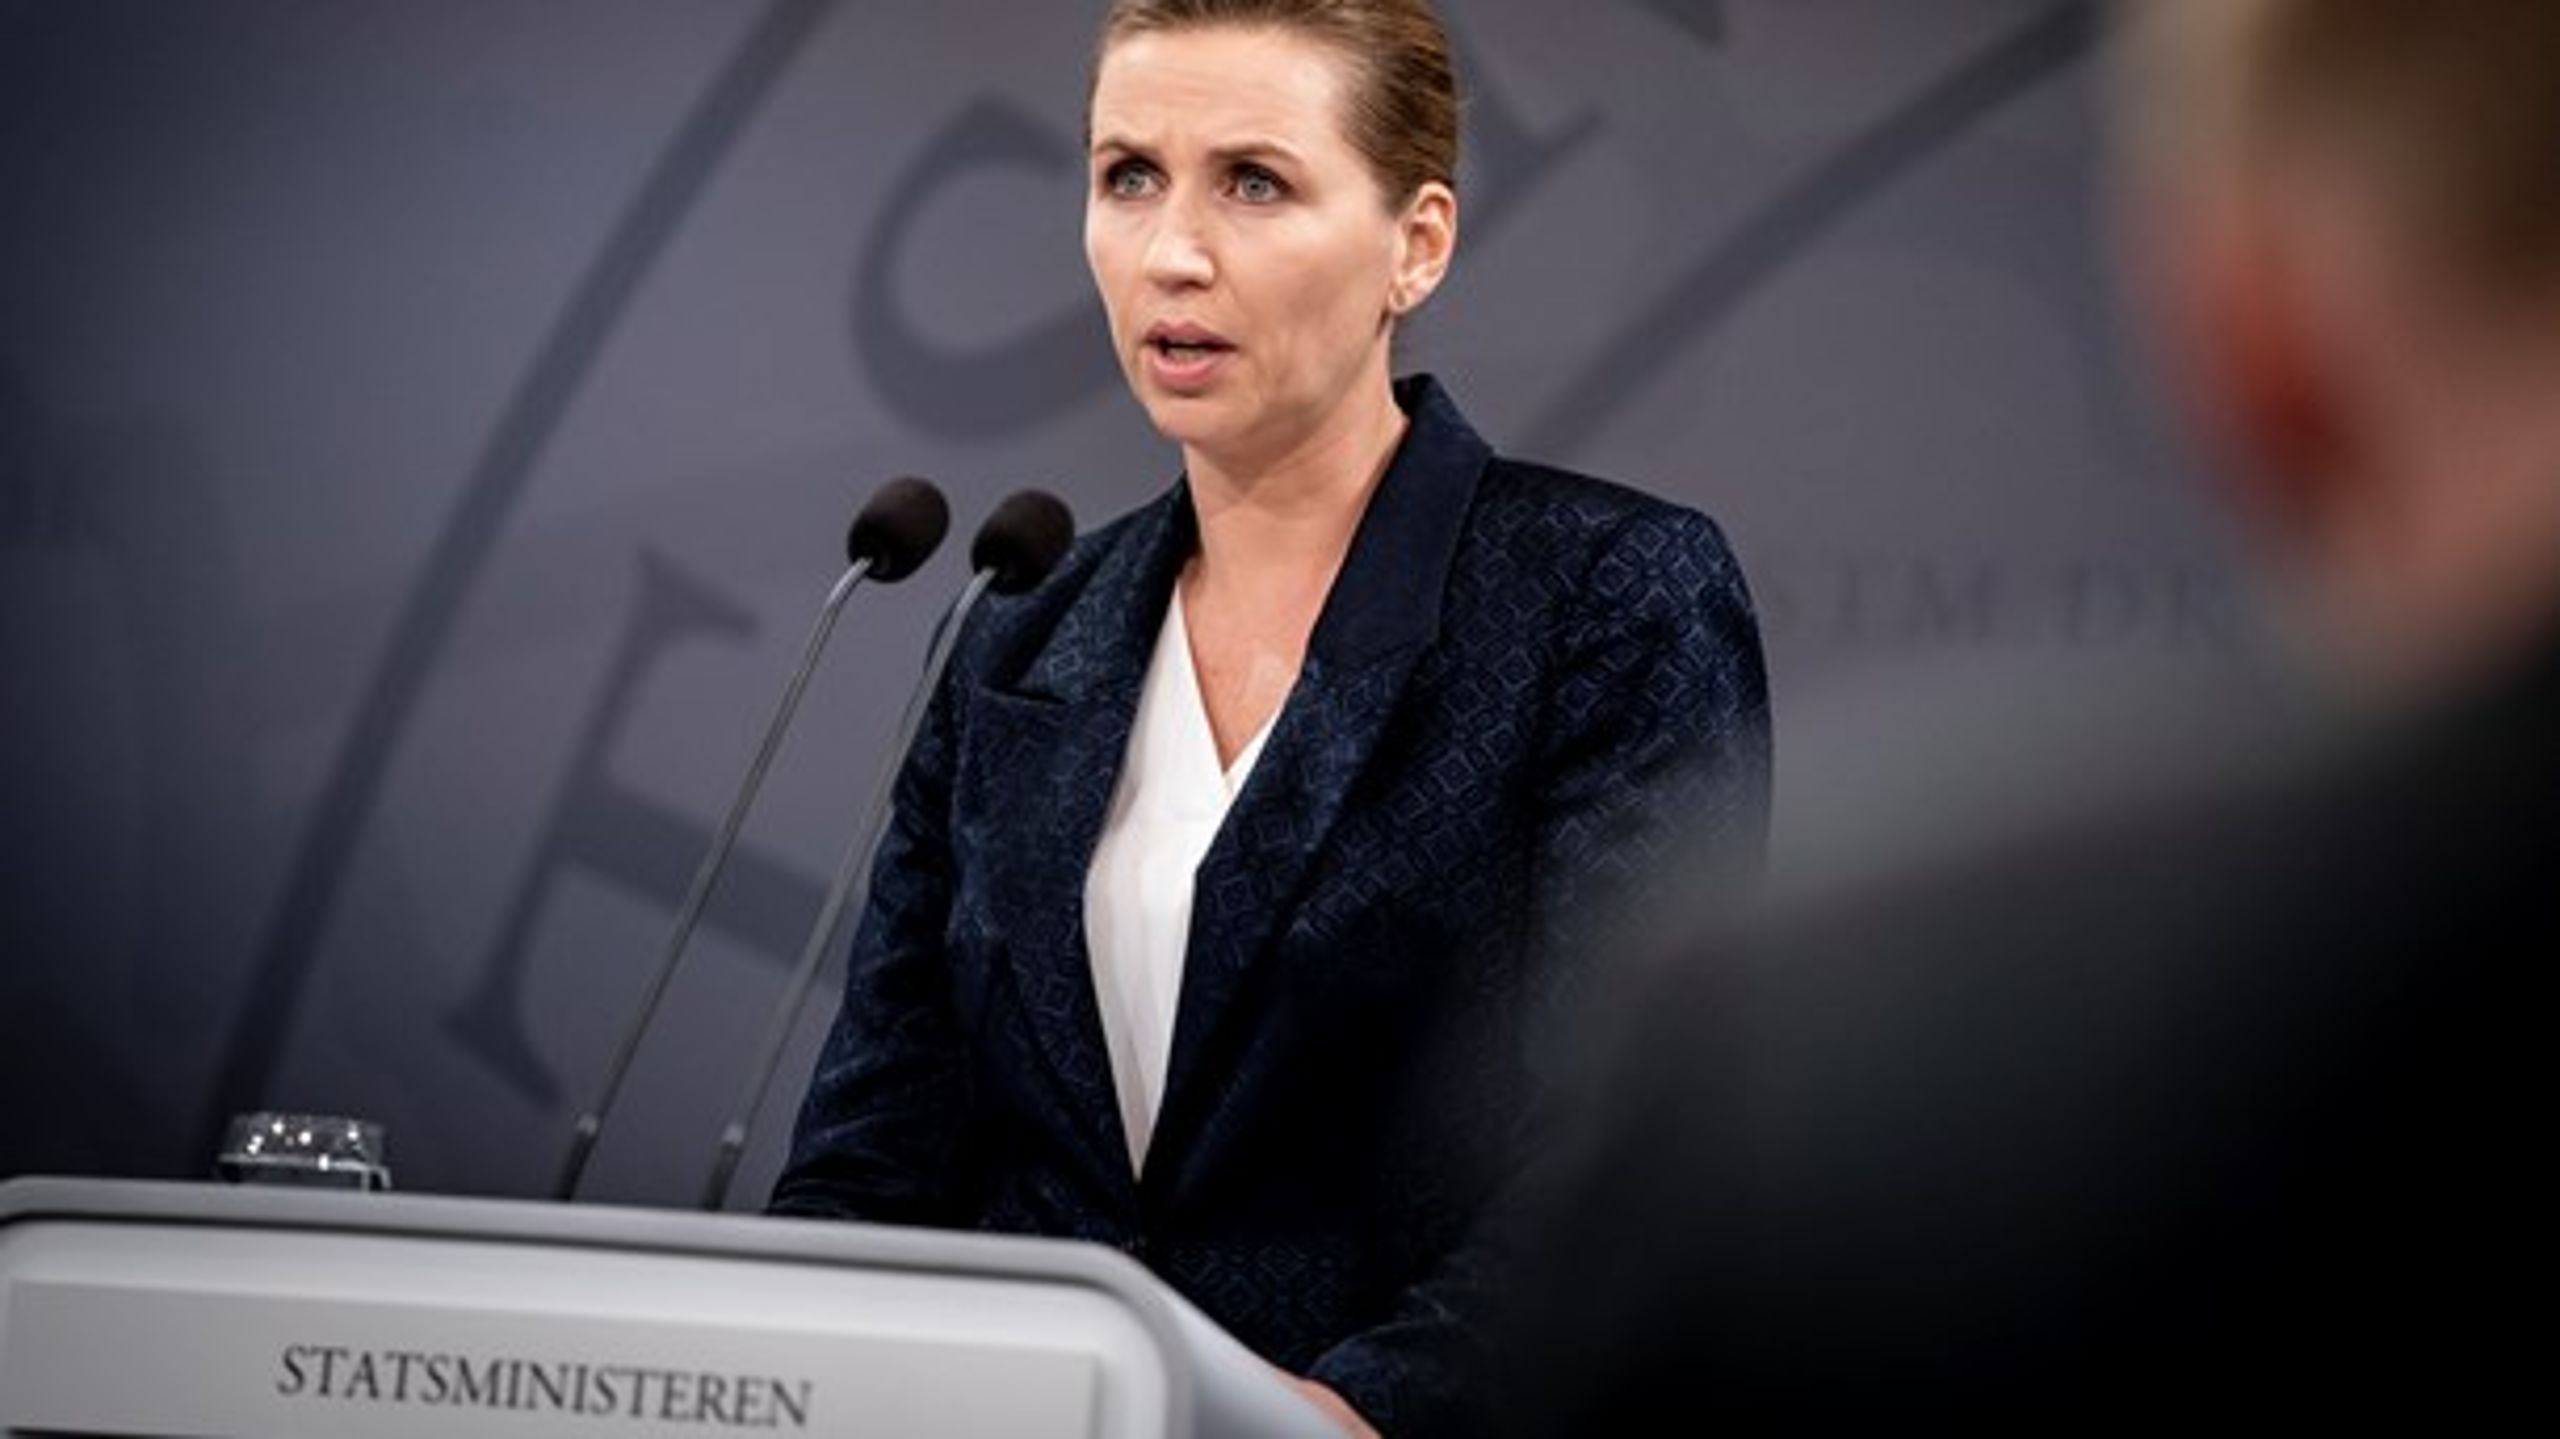 Statsminister Mette Frederiksen (S) advarede på et pressemøde i september om senfølger efter smitte med covid-19.